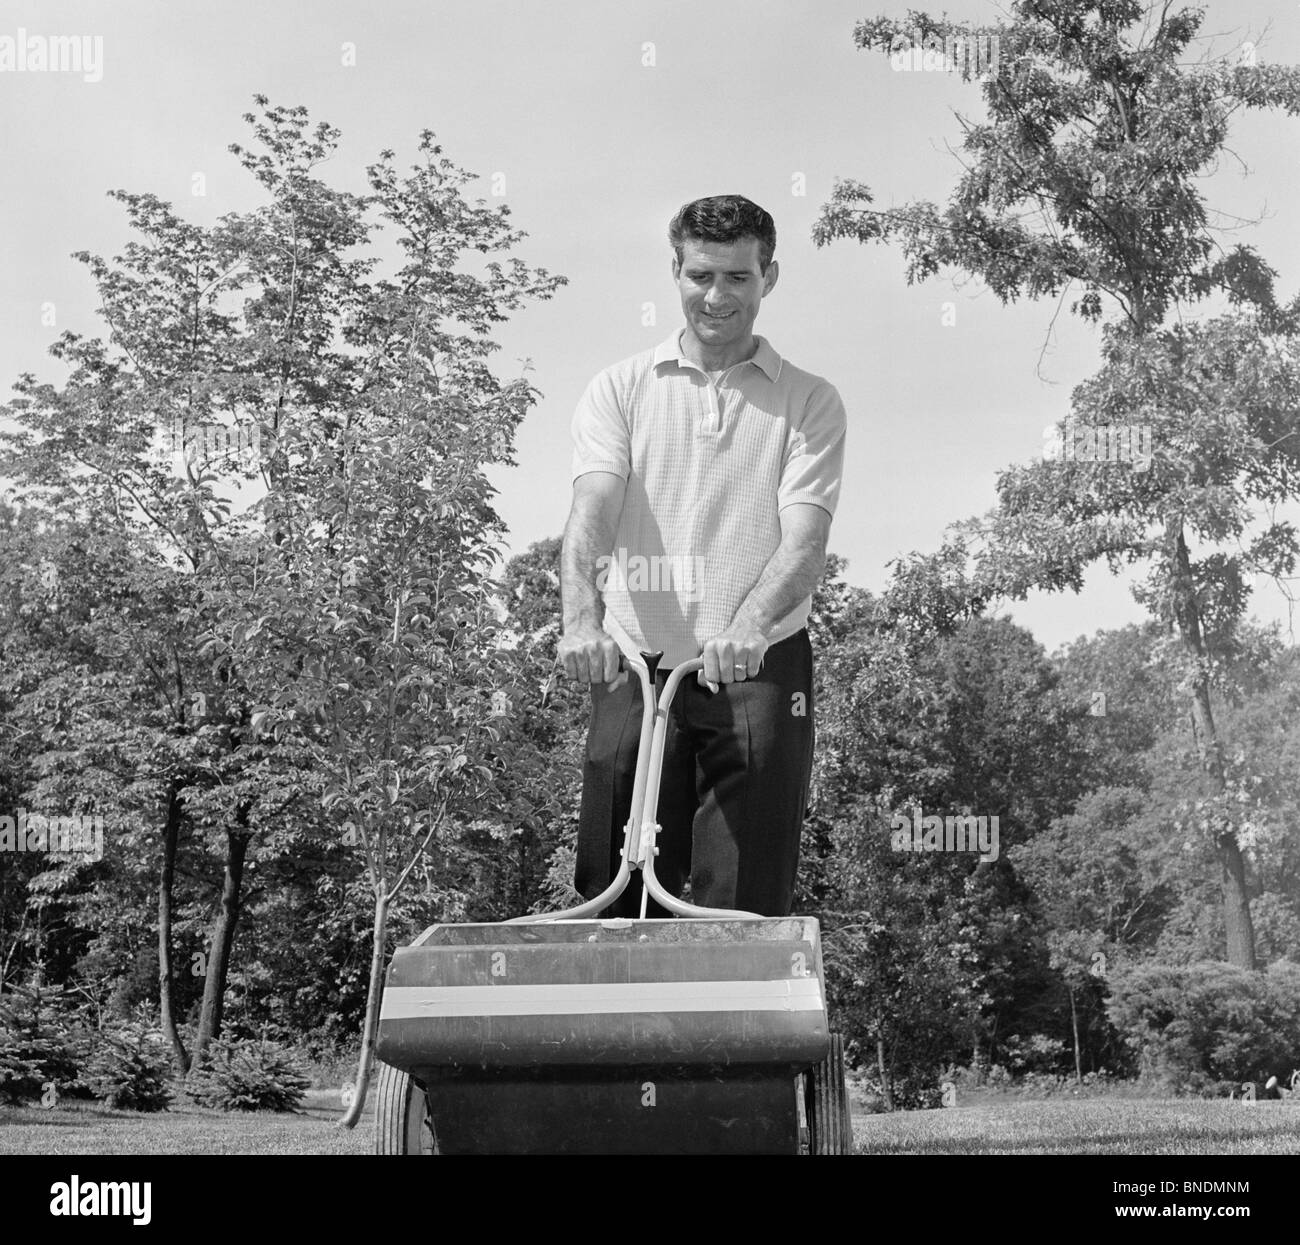 Low angle view of a young man fertiliser une pelouse Banque D'Images